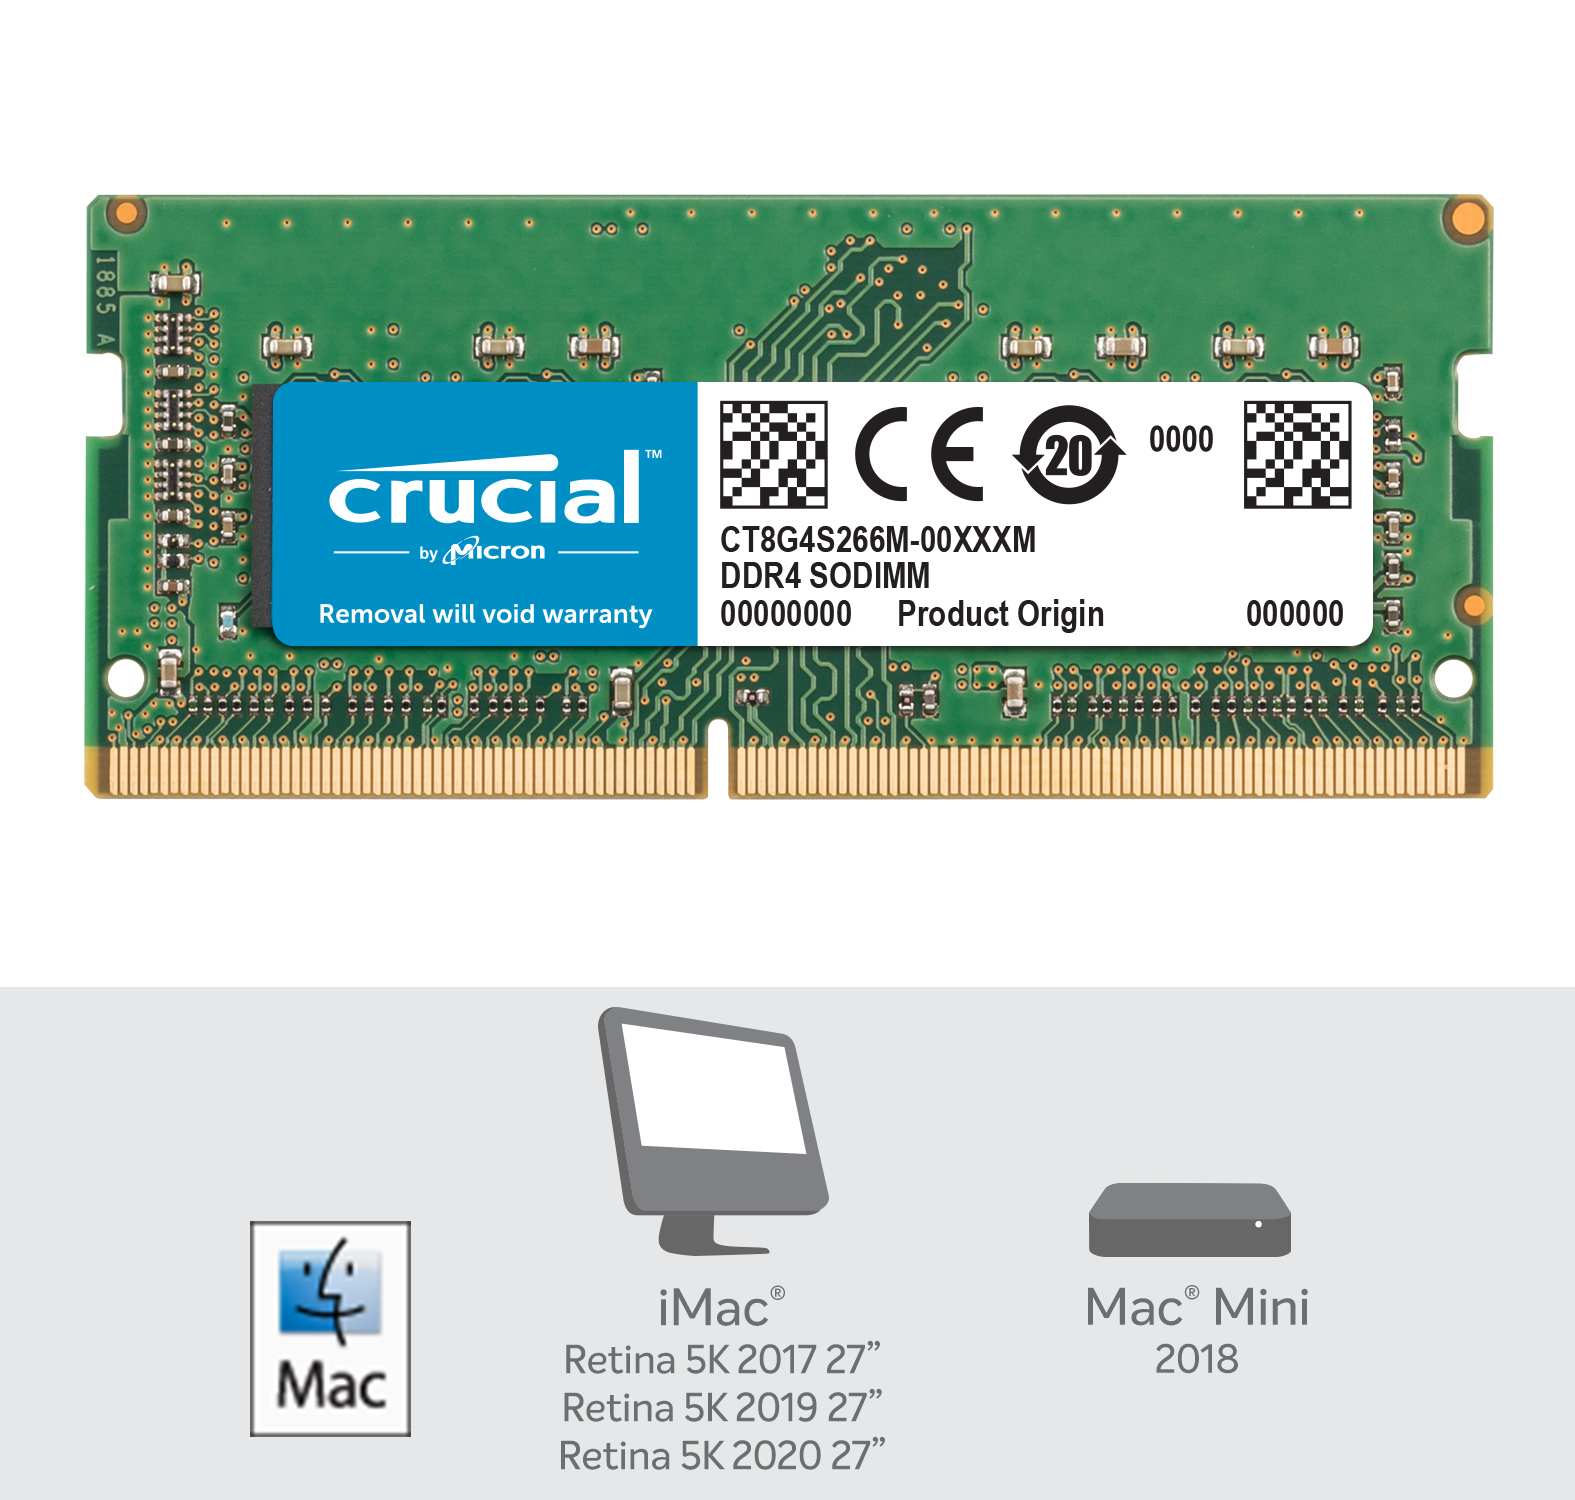 Crucial 8GB DDR4-2666 SODIMM Memory for Mac Crucial.com